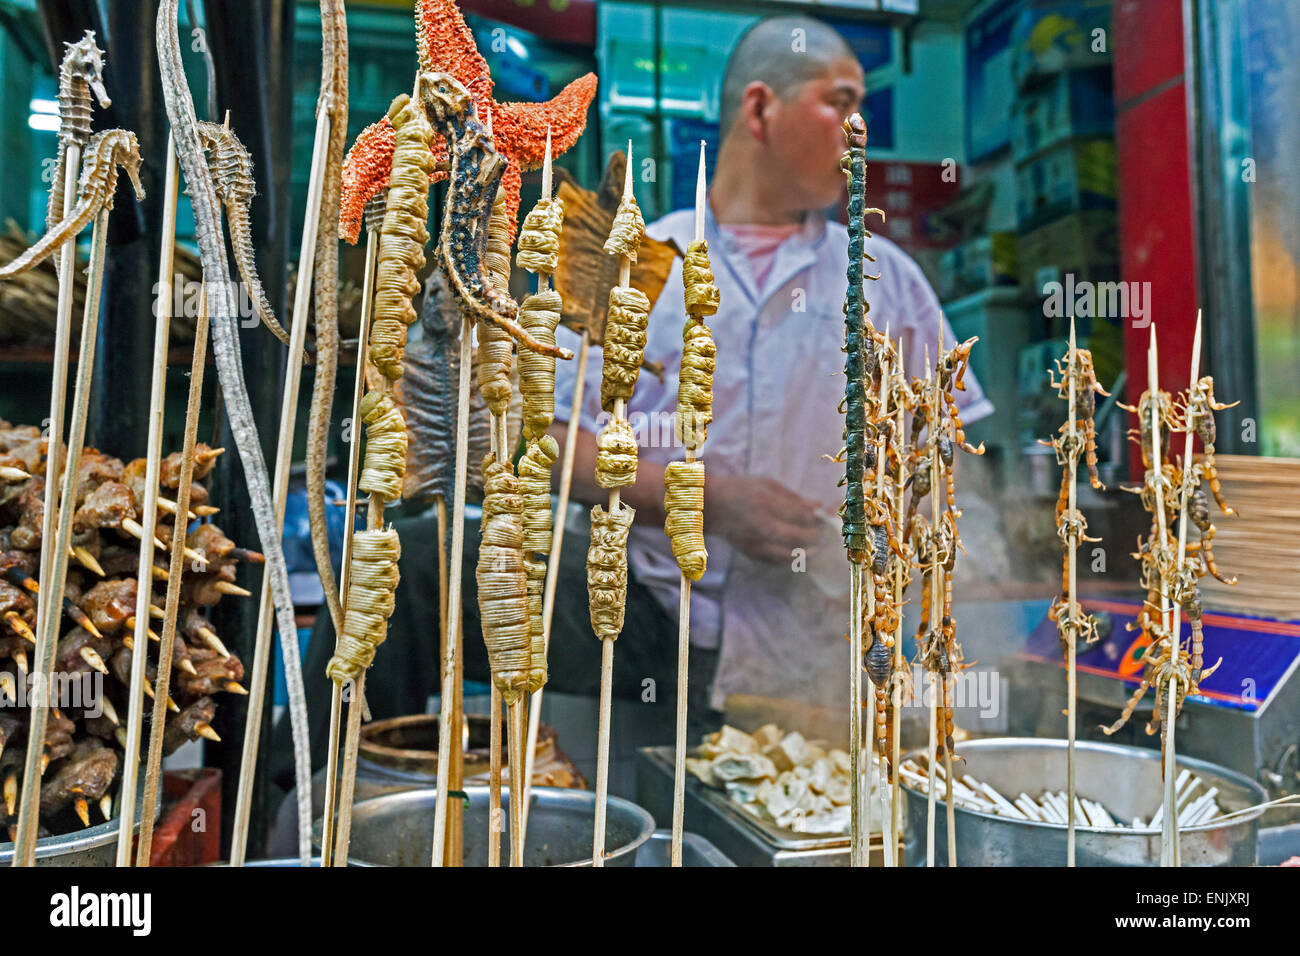 Les Scorpions, les hippocampes, étoiles de mer et autres délices sur les brochettes, pour une vente au marché nocturne de la rue Wangfujing, Beijing, China, Asia Banque D'Images